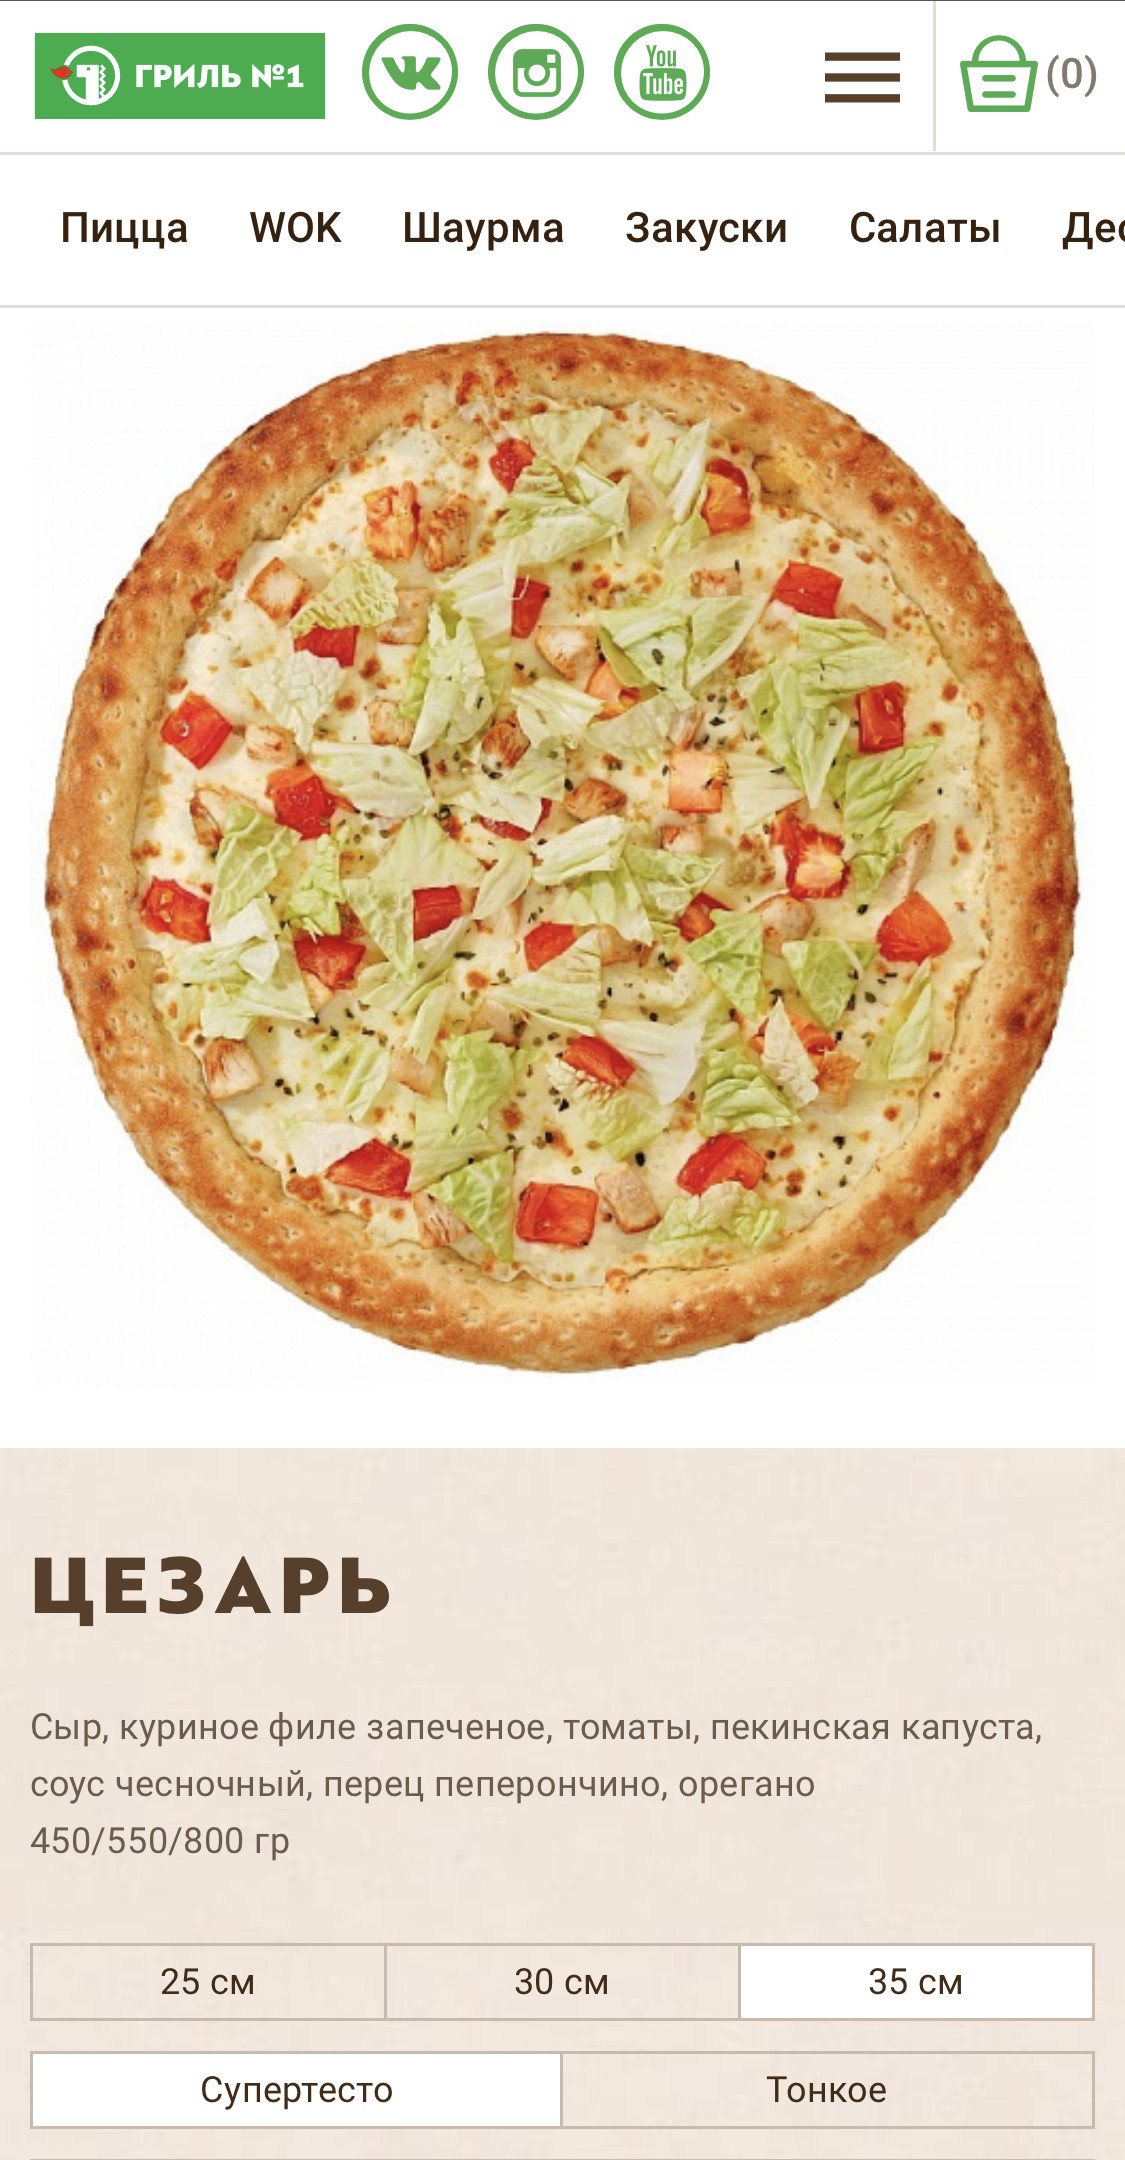 Калорийность пиццы на тонком тесте. Пицца ккал. Шаурма пицца вок.